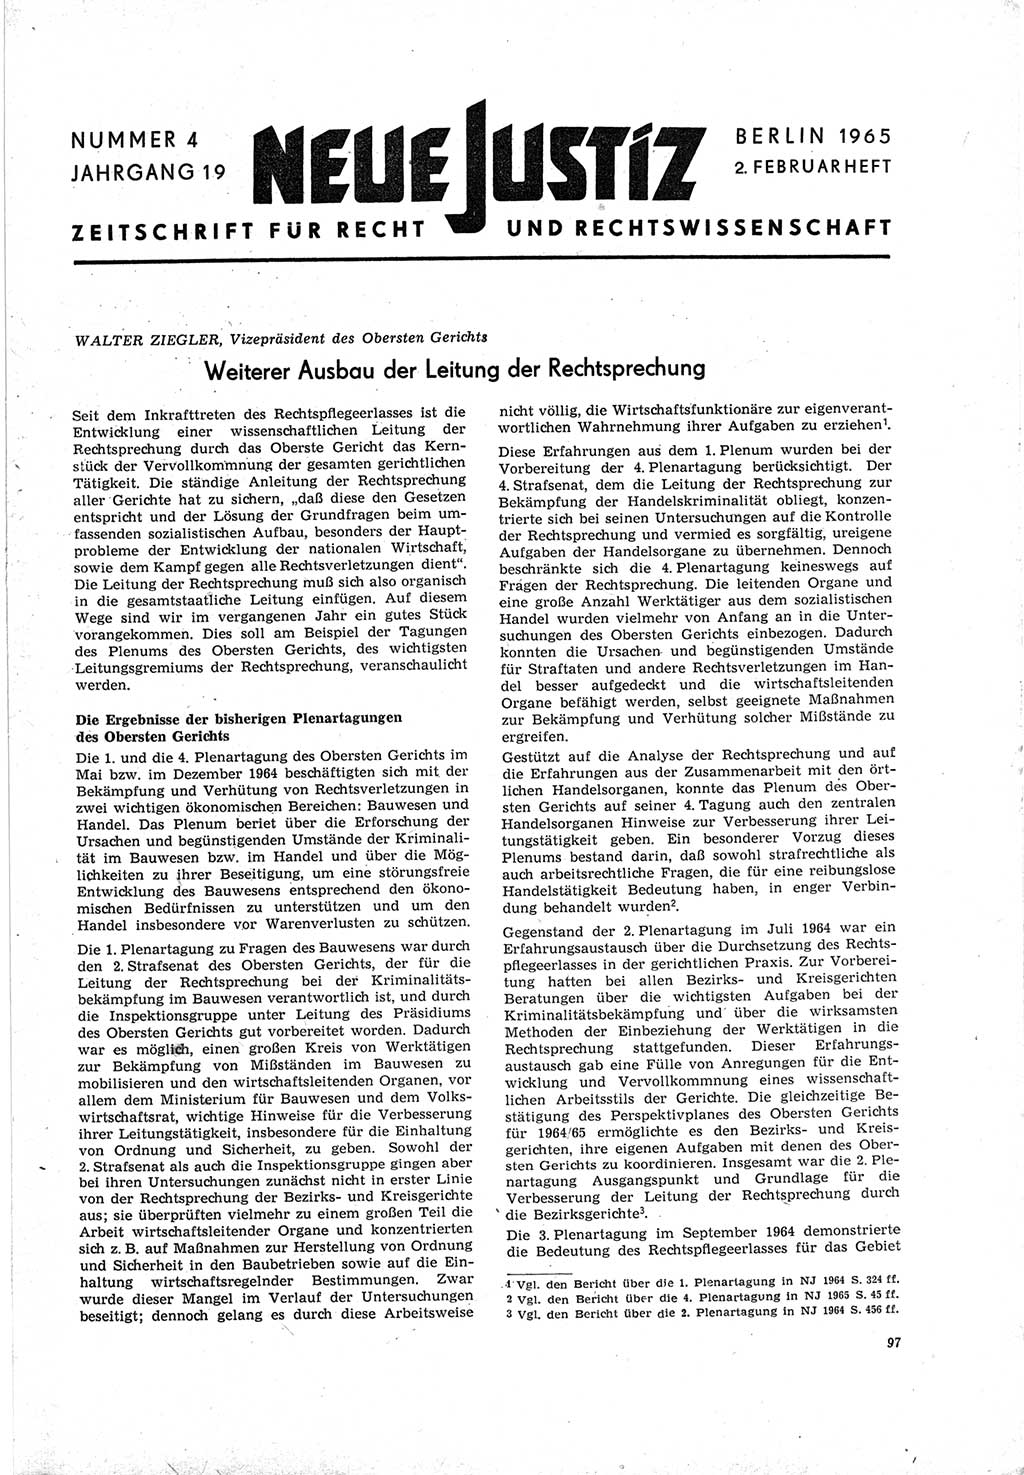 Neue Justiz (NJ), Zeitschrift für Recht und Rechtswissenschaft [Deutsche Demokratische Republik (DDR)], 19. Jahrgang 1965, Seite 97 (NJ DDR 1965, S. 97)